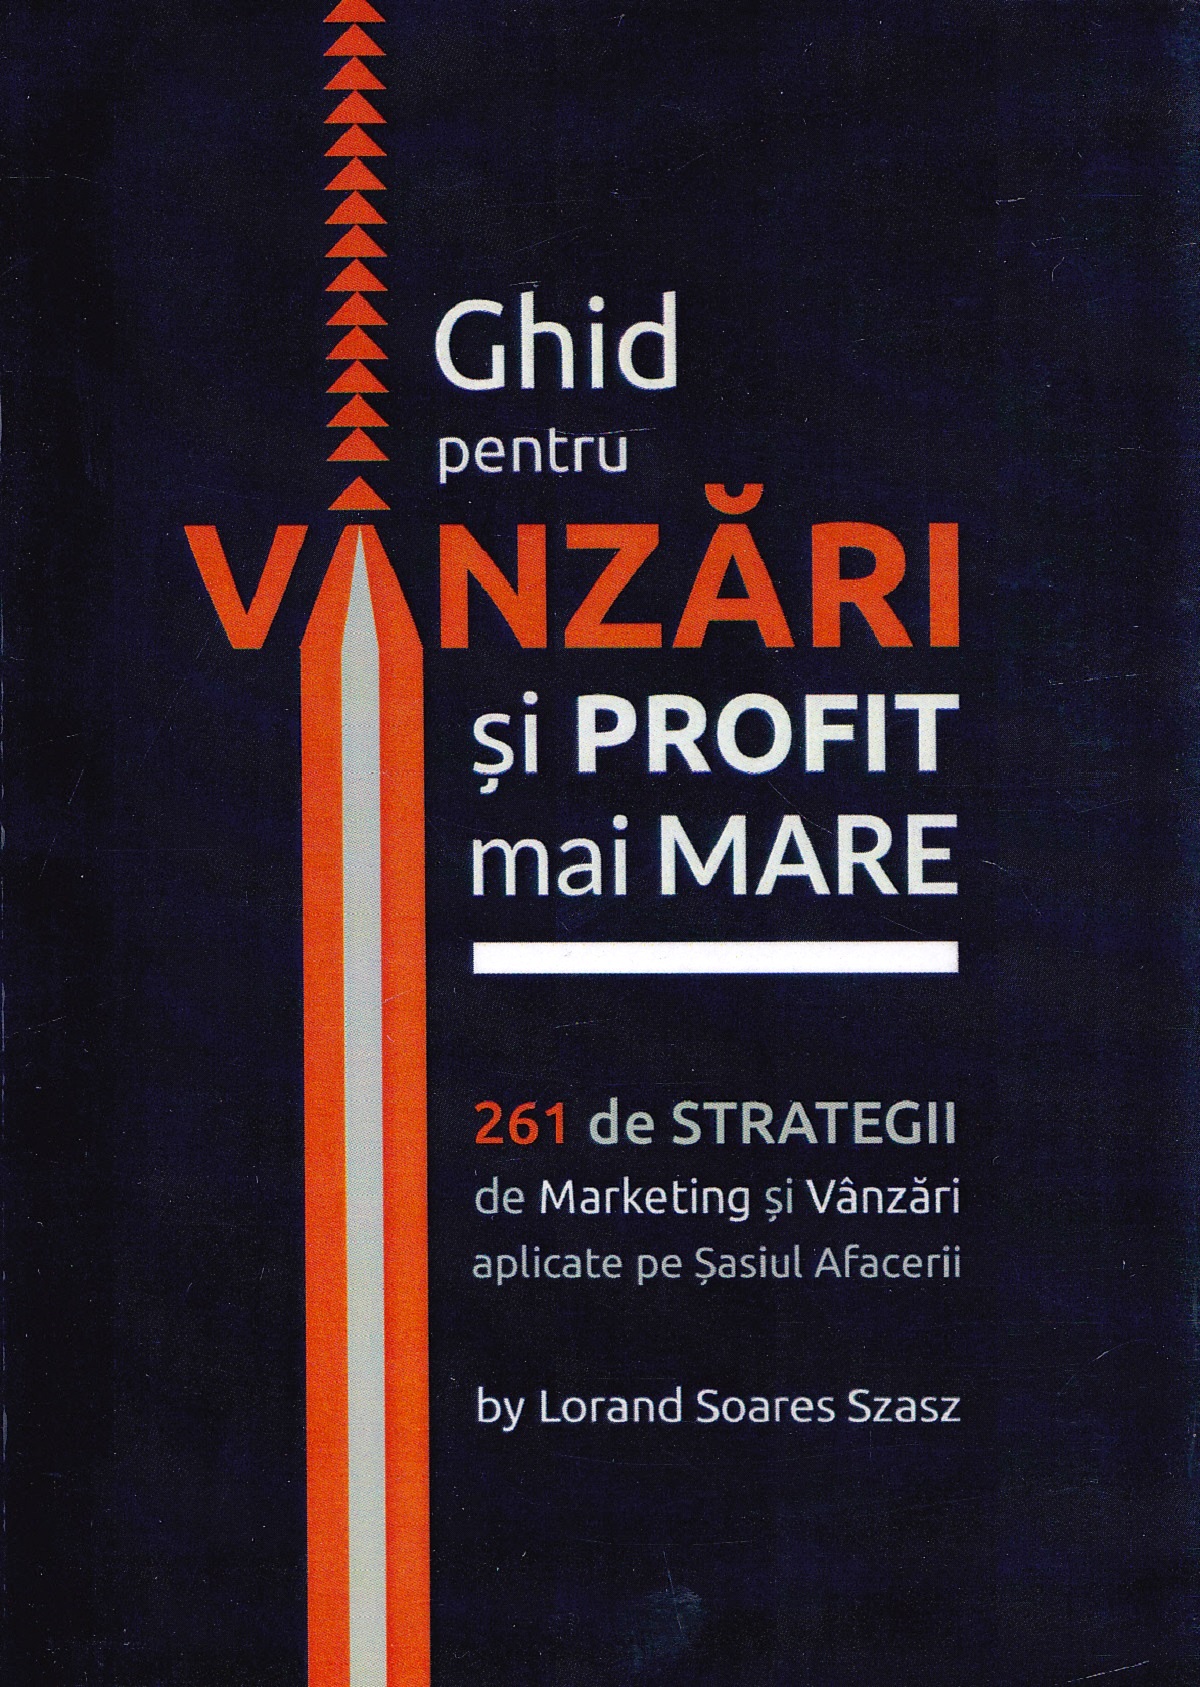 Ghid pentru vanzari si profit mai mare. 261 de strategii de marketing - Lorand Soares Szasz